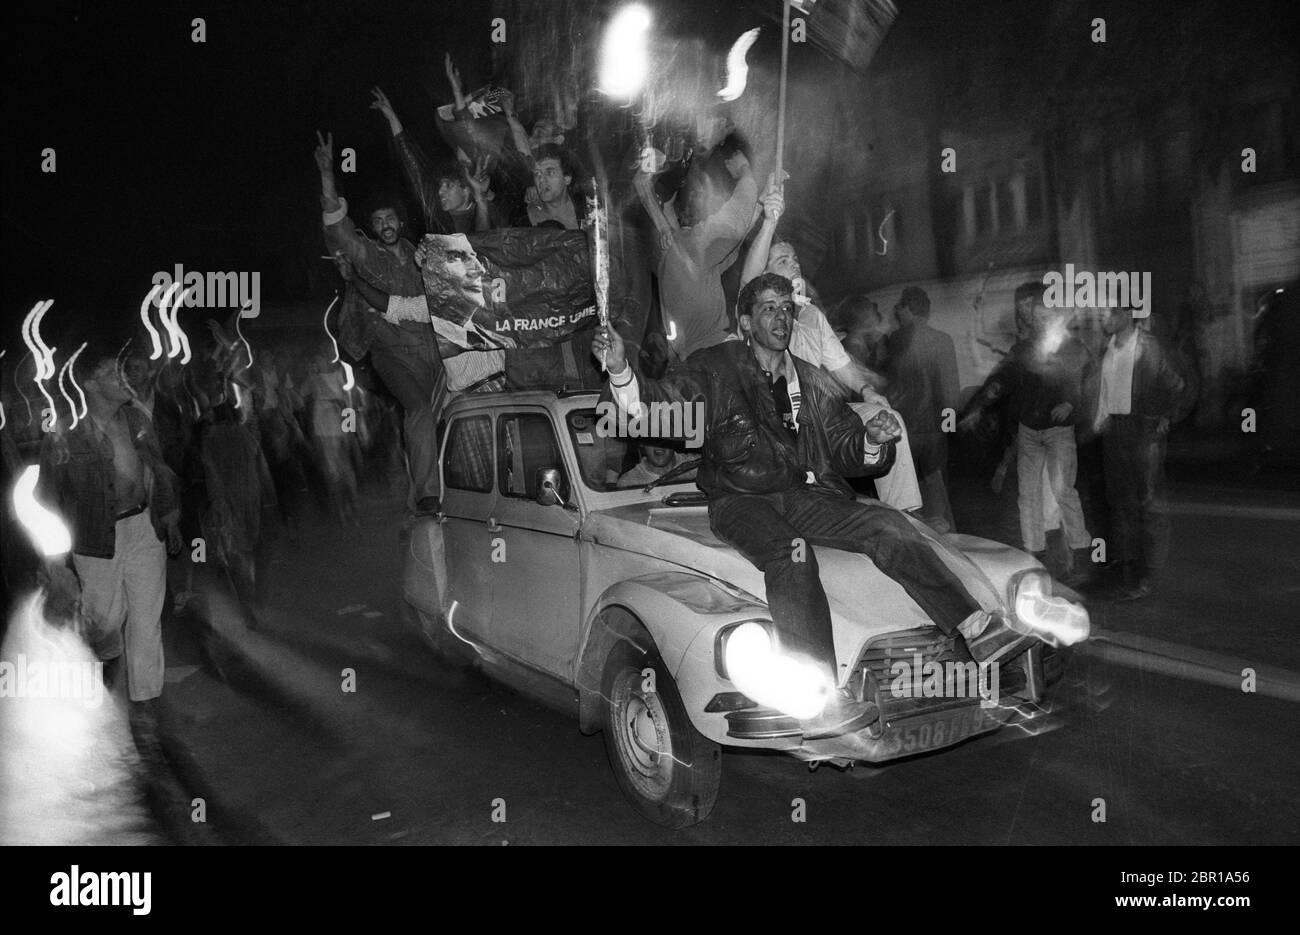 Wahlen In Frankreich 1988. Francois Mitterrand Anhänger feiern seinen Wahlsieg für die Sozialistische Partei in der Place de la Republic in Paris 1988 Stockfoto